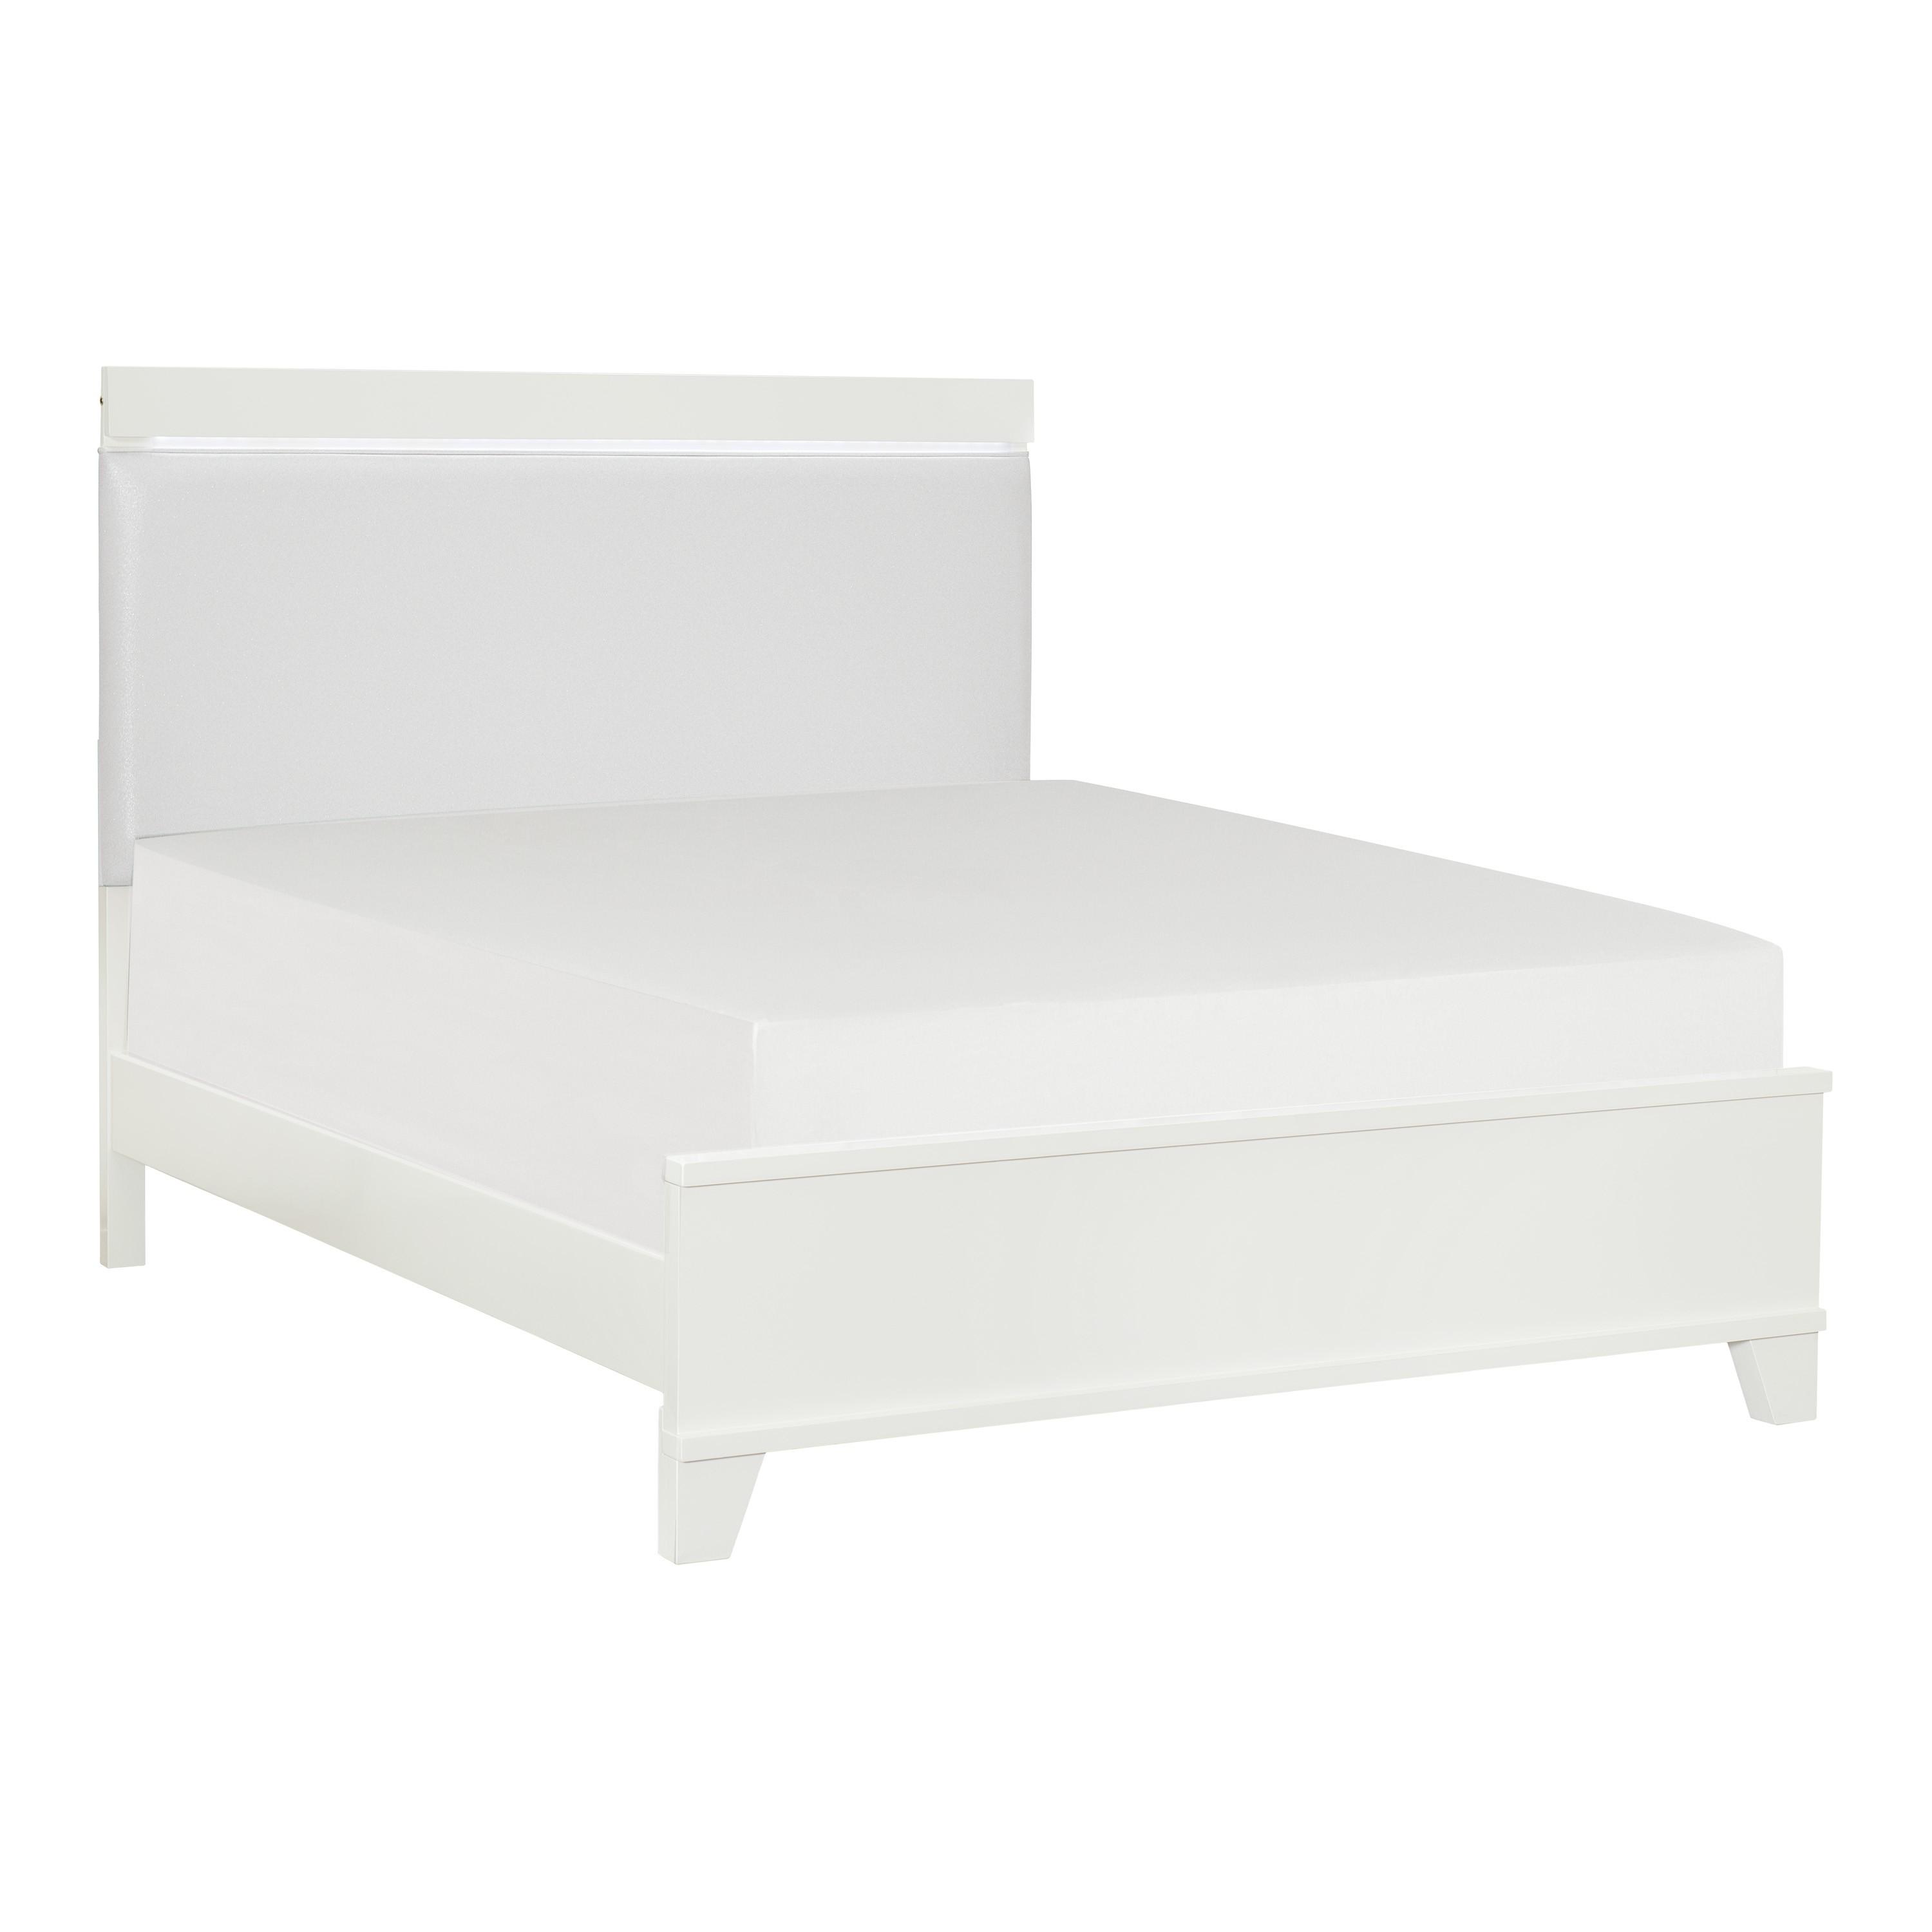 

    
Modern White High Gloss Wood Full Bedroom Set 5pcs Homelegance 1678WF-1* Kerren
